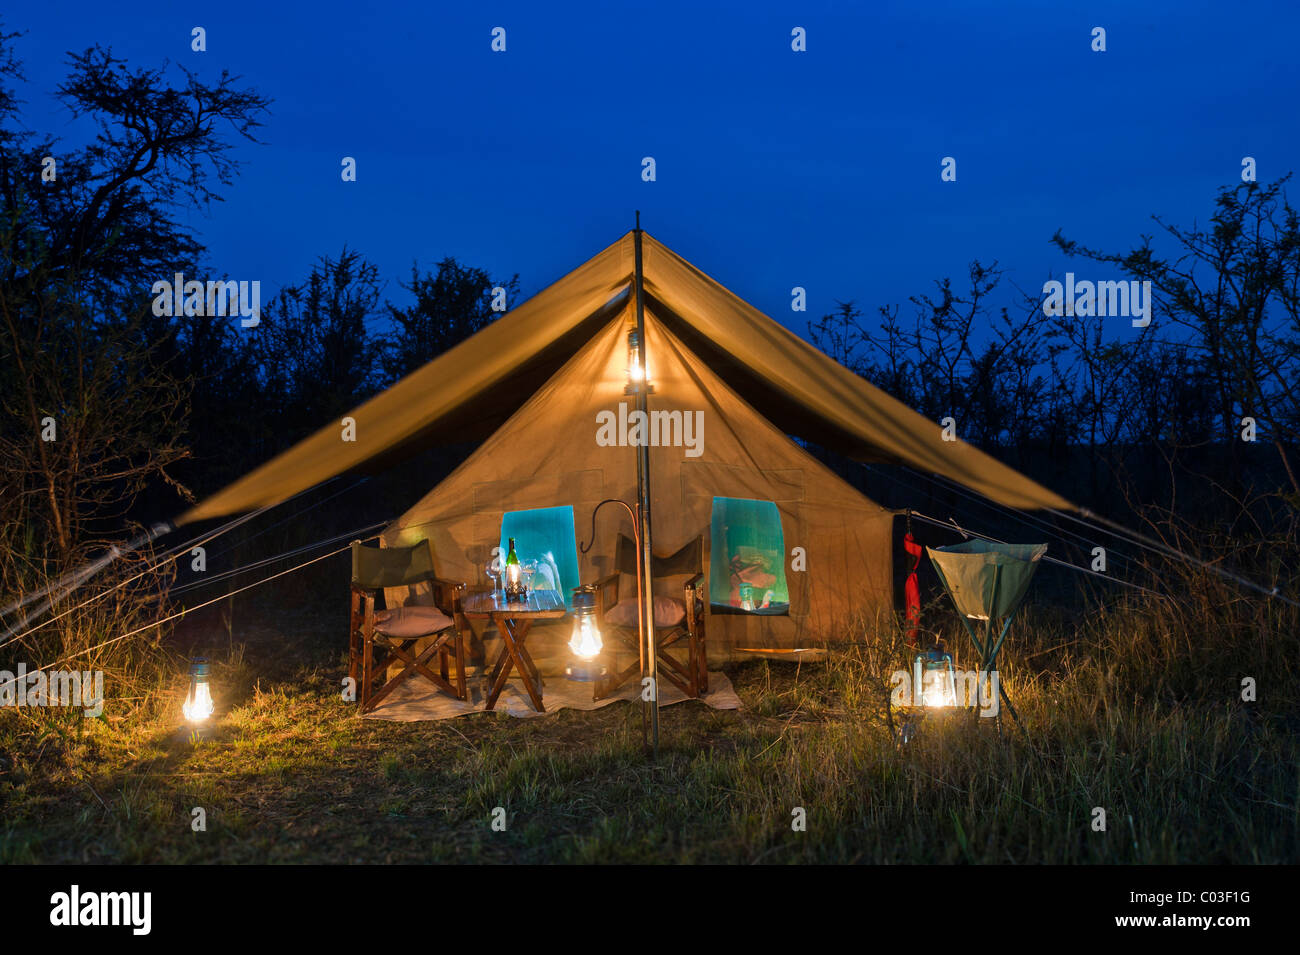 Elegante Luxus-Camp, wohnen im Zelt, Zelt in der Abenddämmerung mit Beleuchtung, Serengeti, Tansania, Afrika Stockfoto